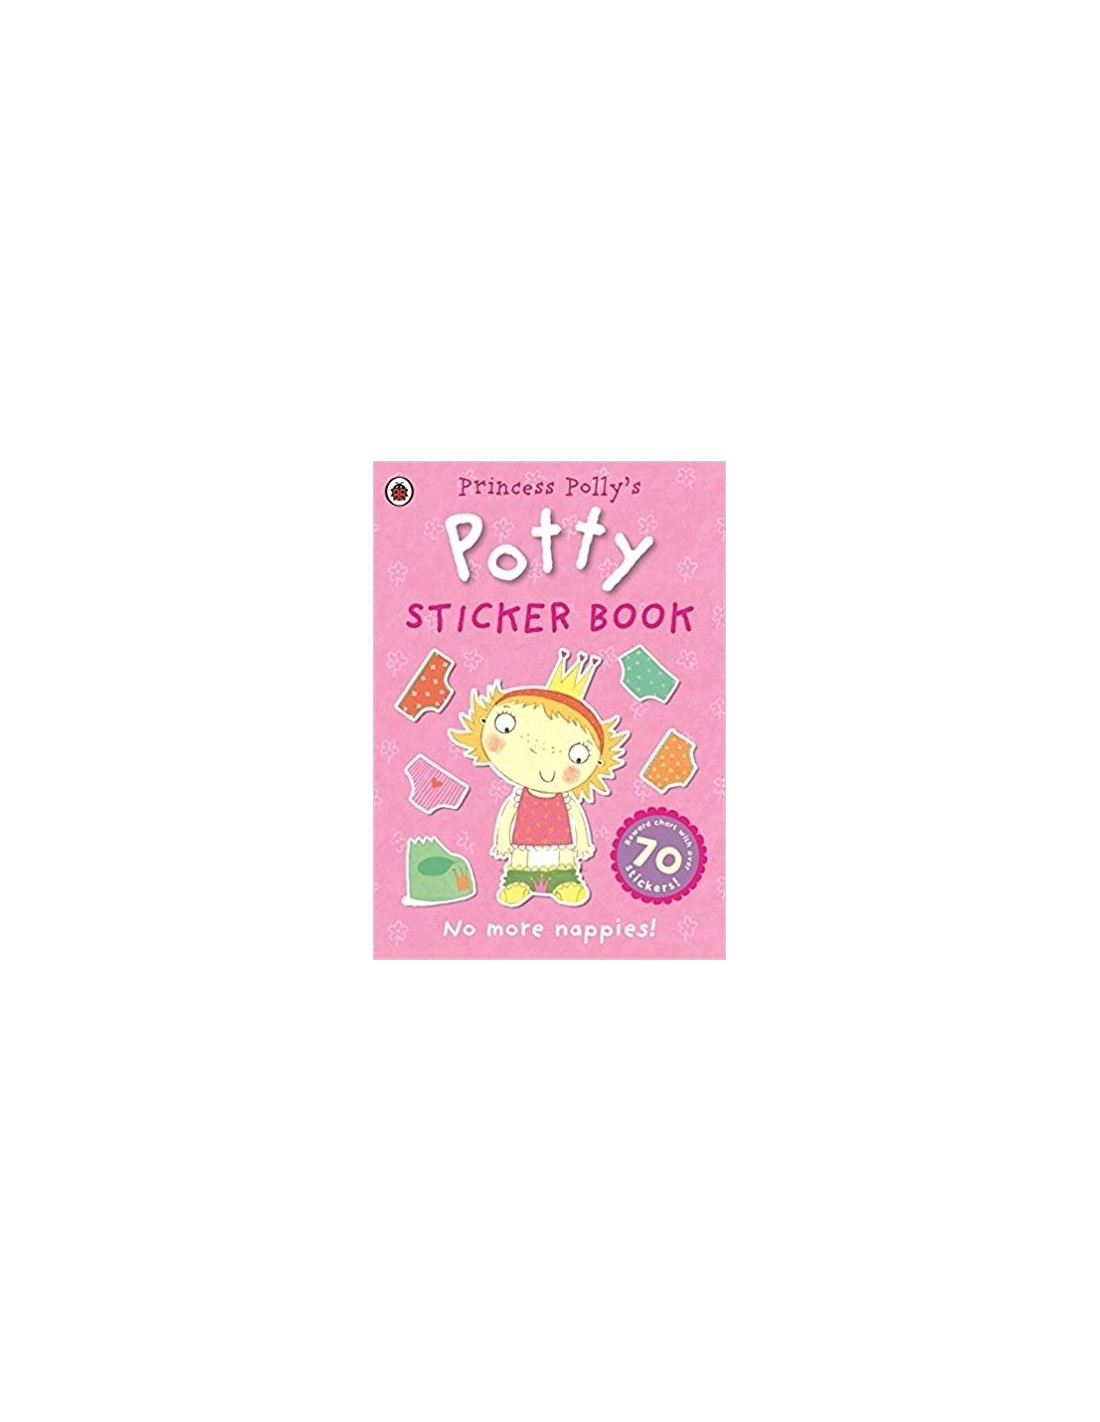 Princess Polly Potty sticker book